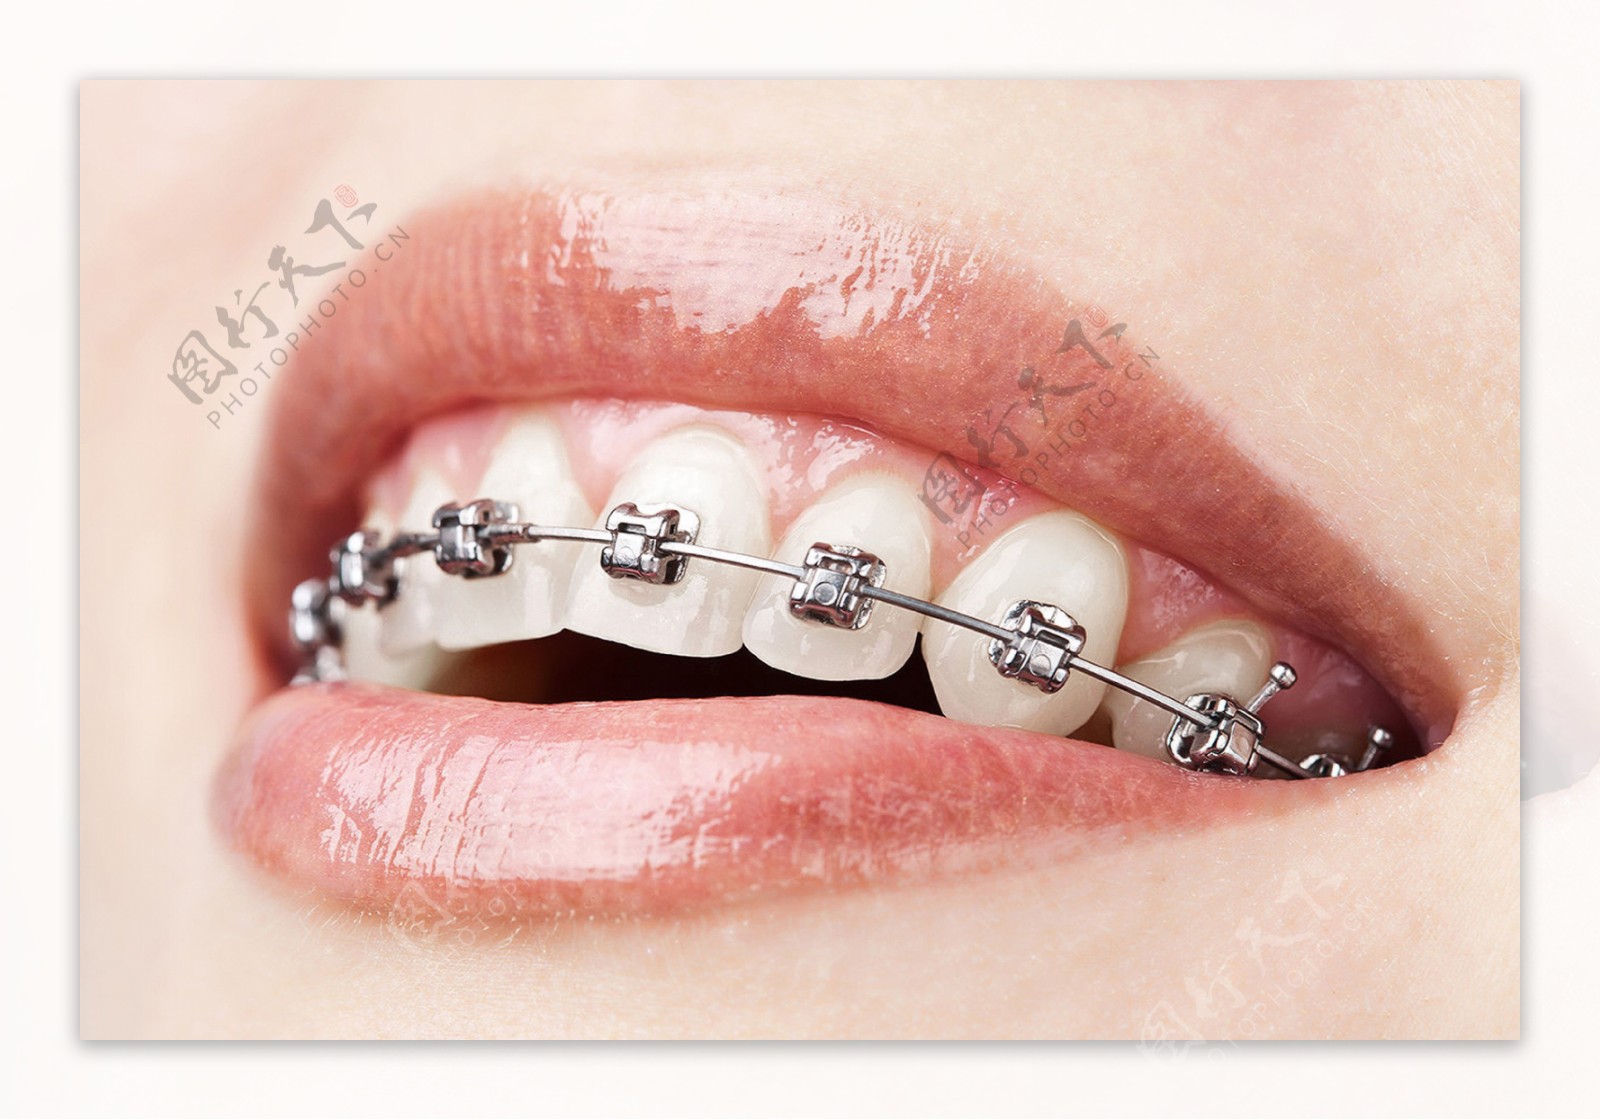 成年人第一次带牙套是怎么一种体验#？ - 知乎